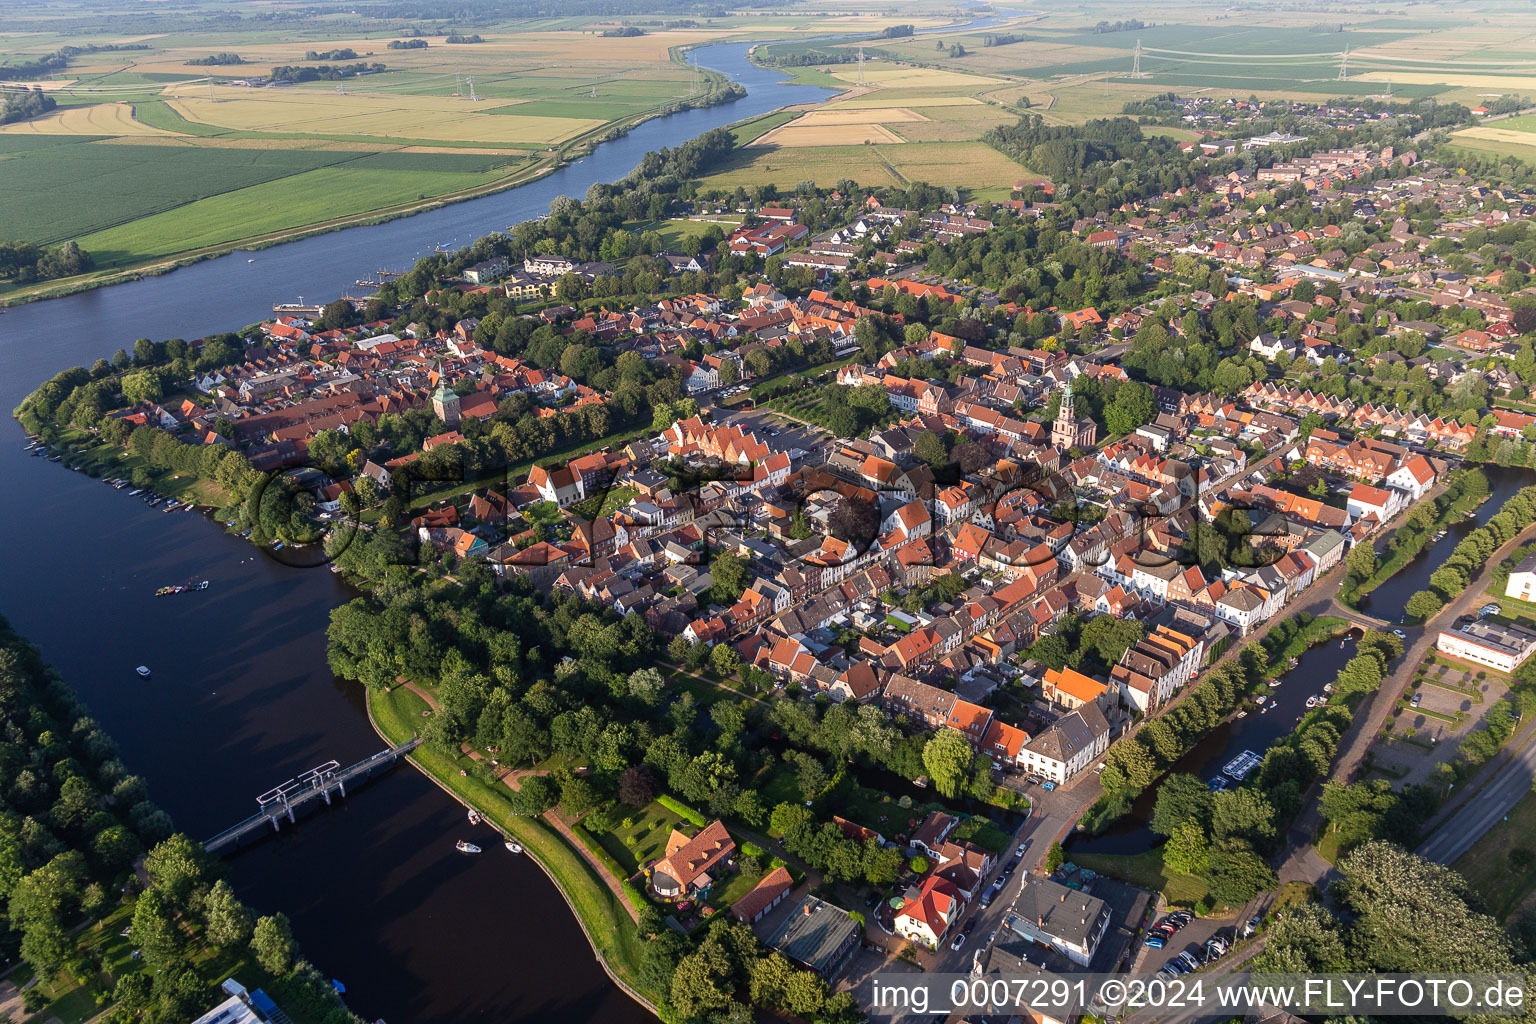 Photographie aérienne de Ville fluviale entre Treene, Westersielzug et Eider sur les berges fluviales de Treene, Westersielzug et Eider à Friedrichstadt dans le département Schleswig-Holstein, Allemagne